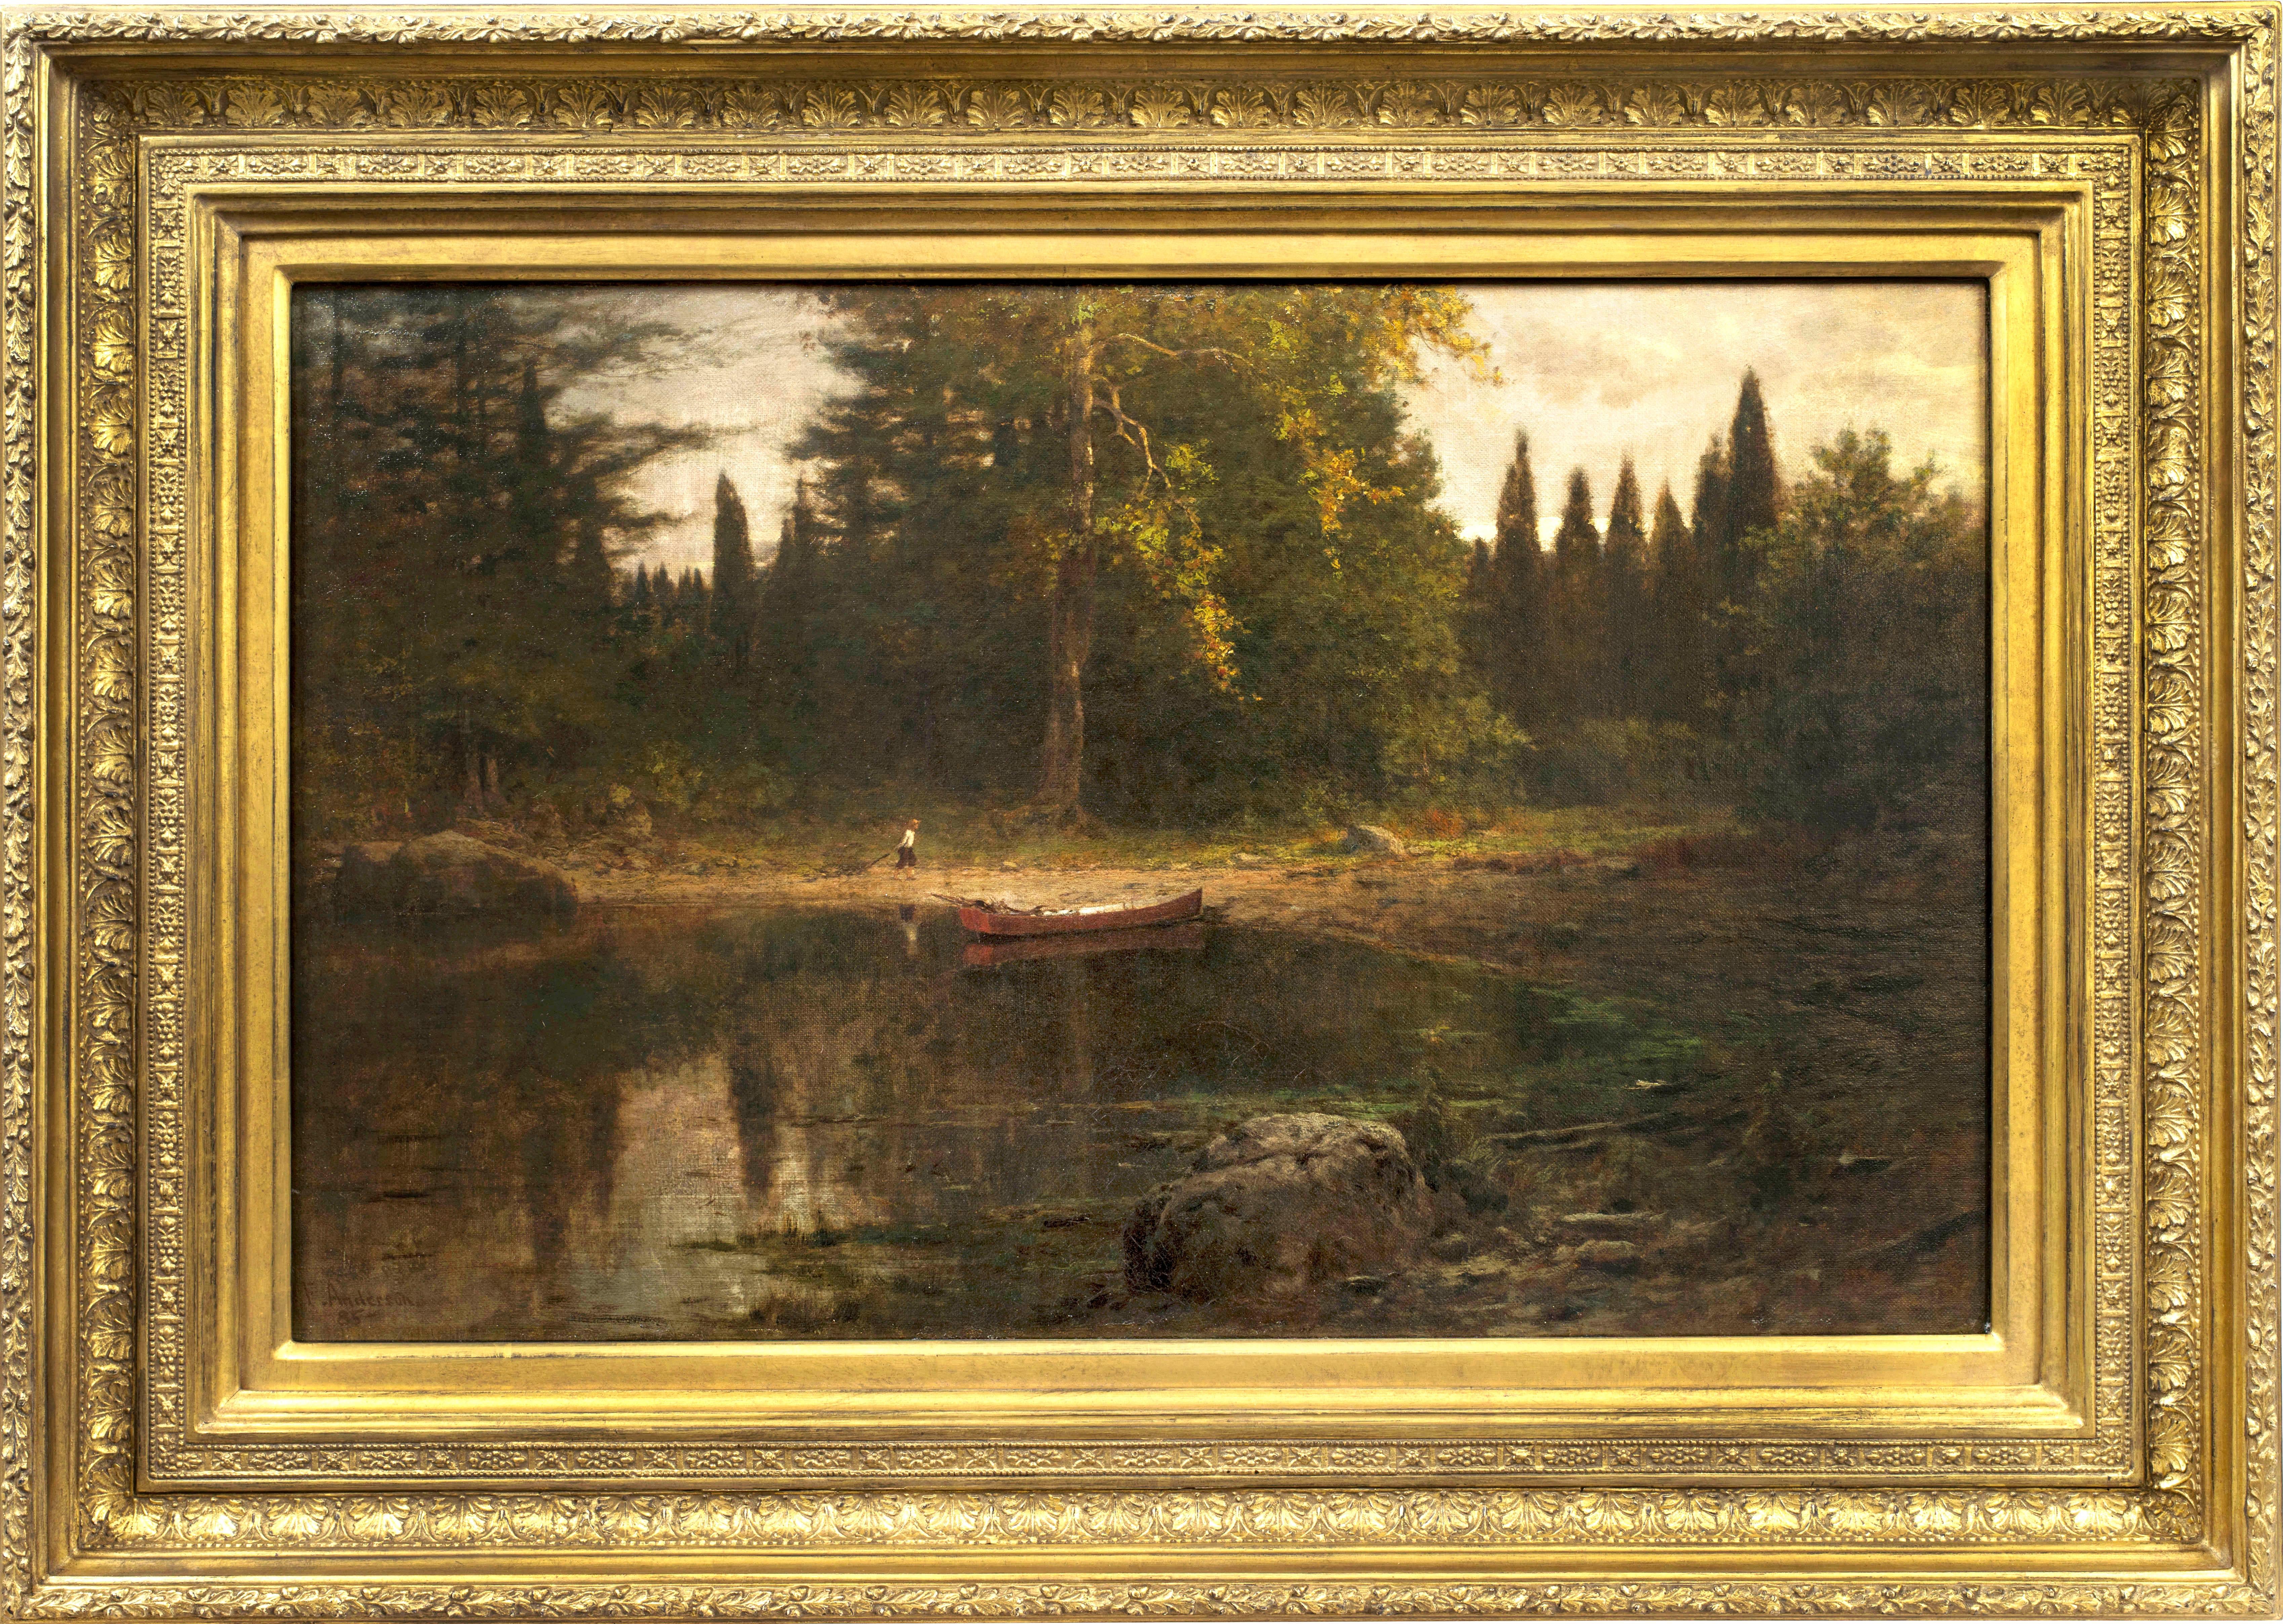 Hudson River Inlet, 1885 par l'artiste de l'école de la rivière Hudson Frank Anderson (1844-1891) est une huile sur toile. L'œuvre mesure 15,13 x 24,25 pouces et est signée et datée par l'artiste en bas à gauche. L'œuvre est encadrée et prête à être